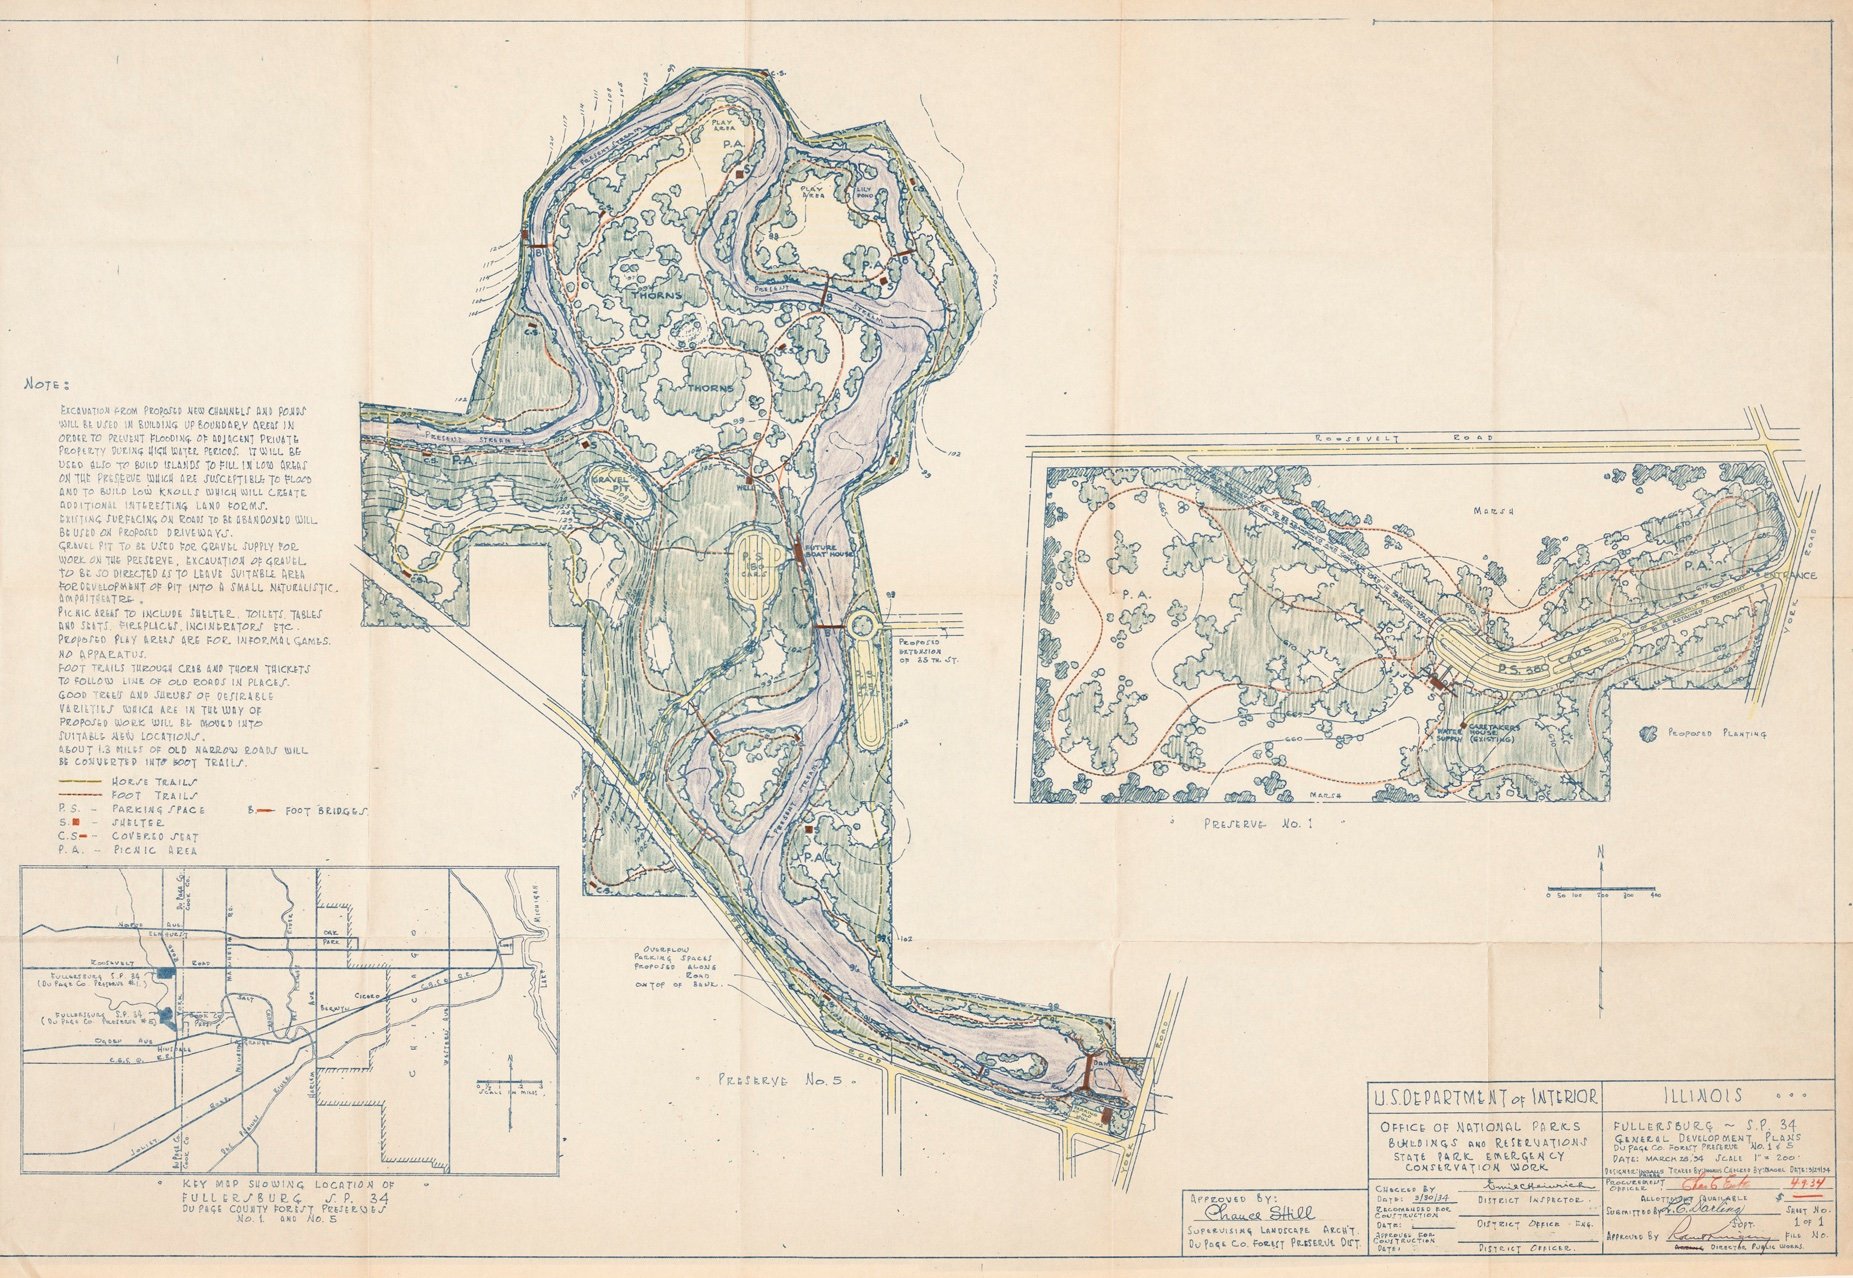 Fullersburg landscape plan